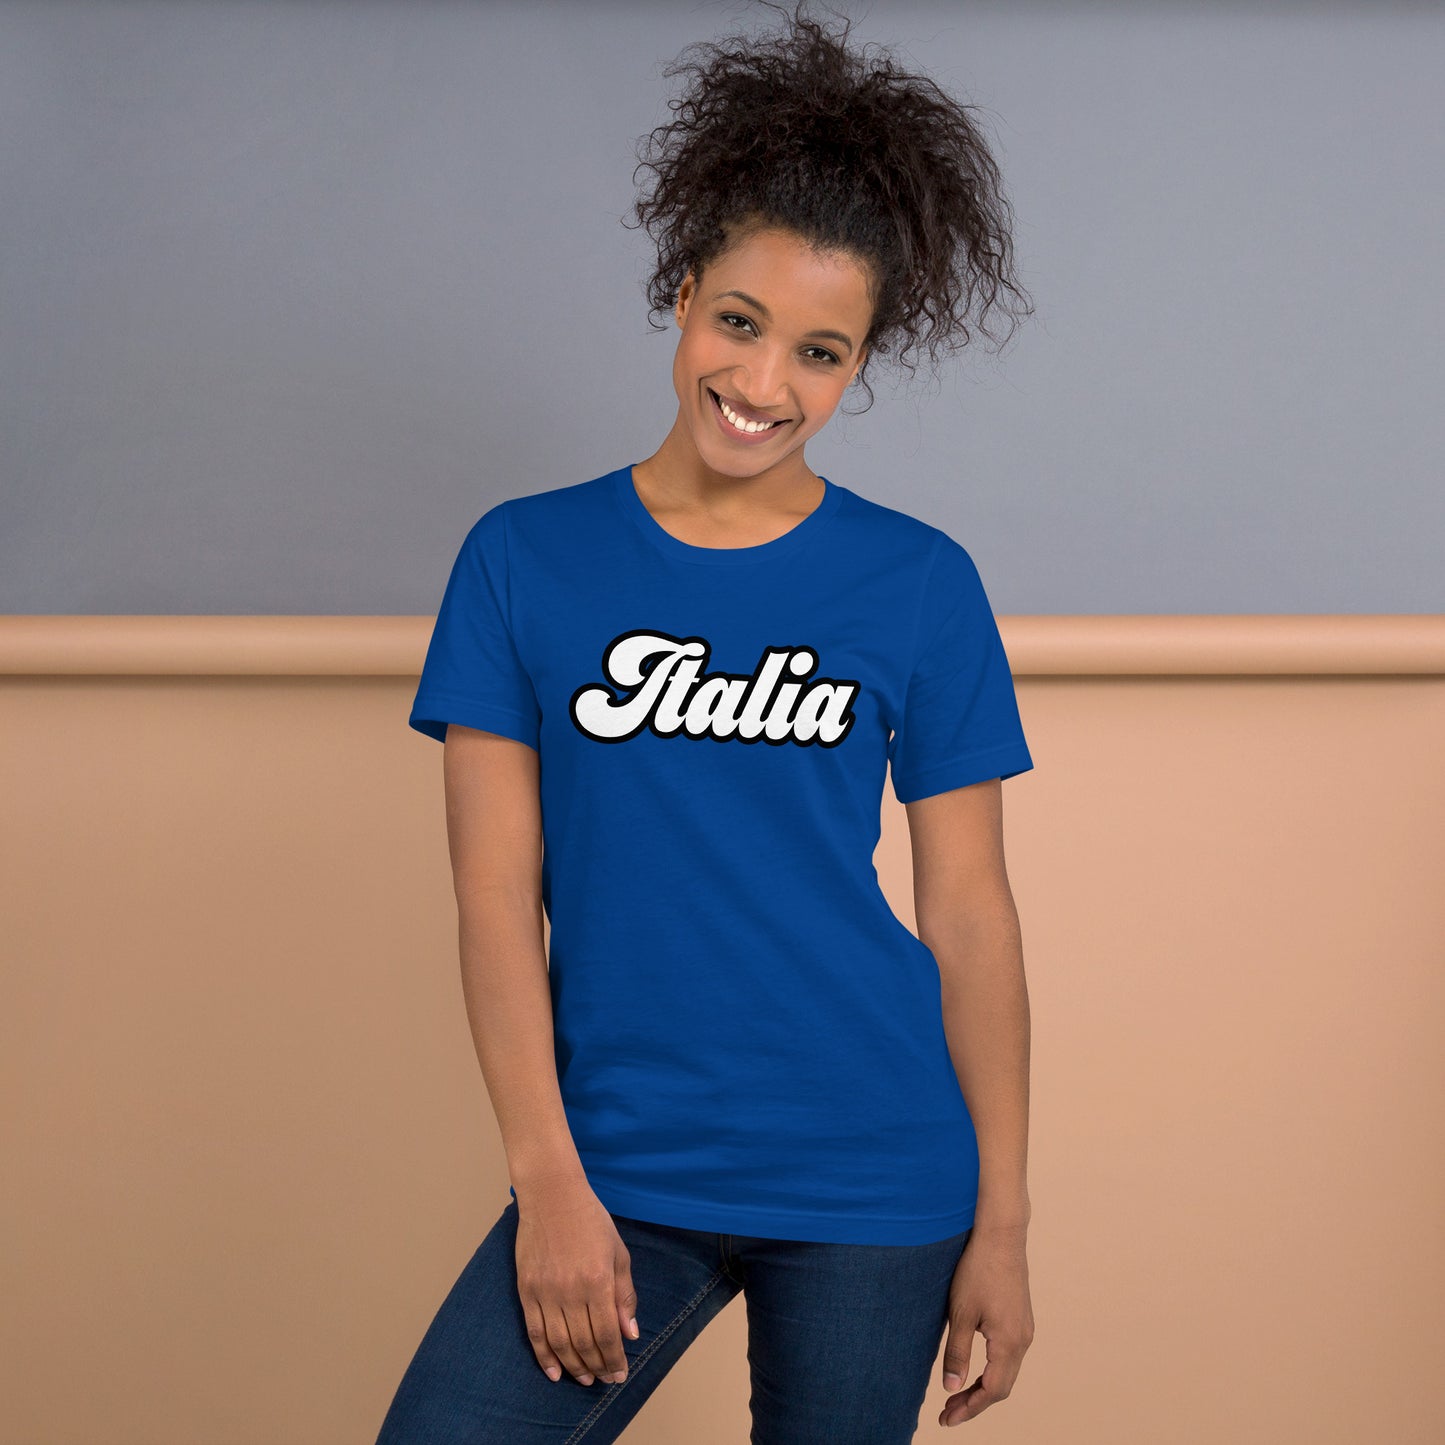 Unisex-T-Shirt "Italia"